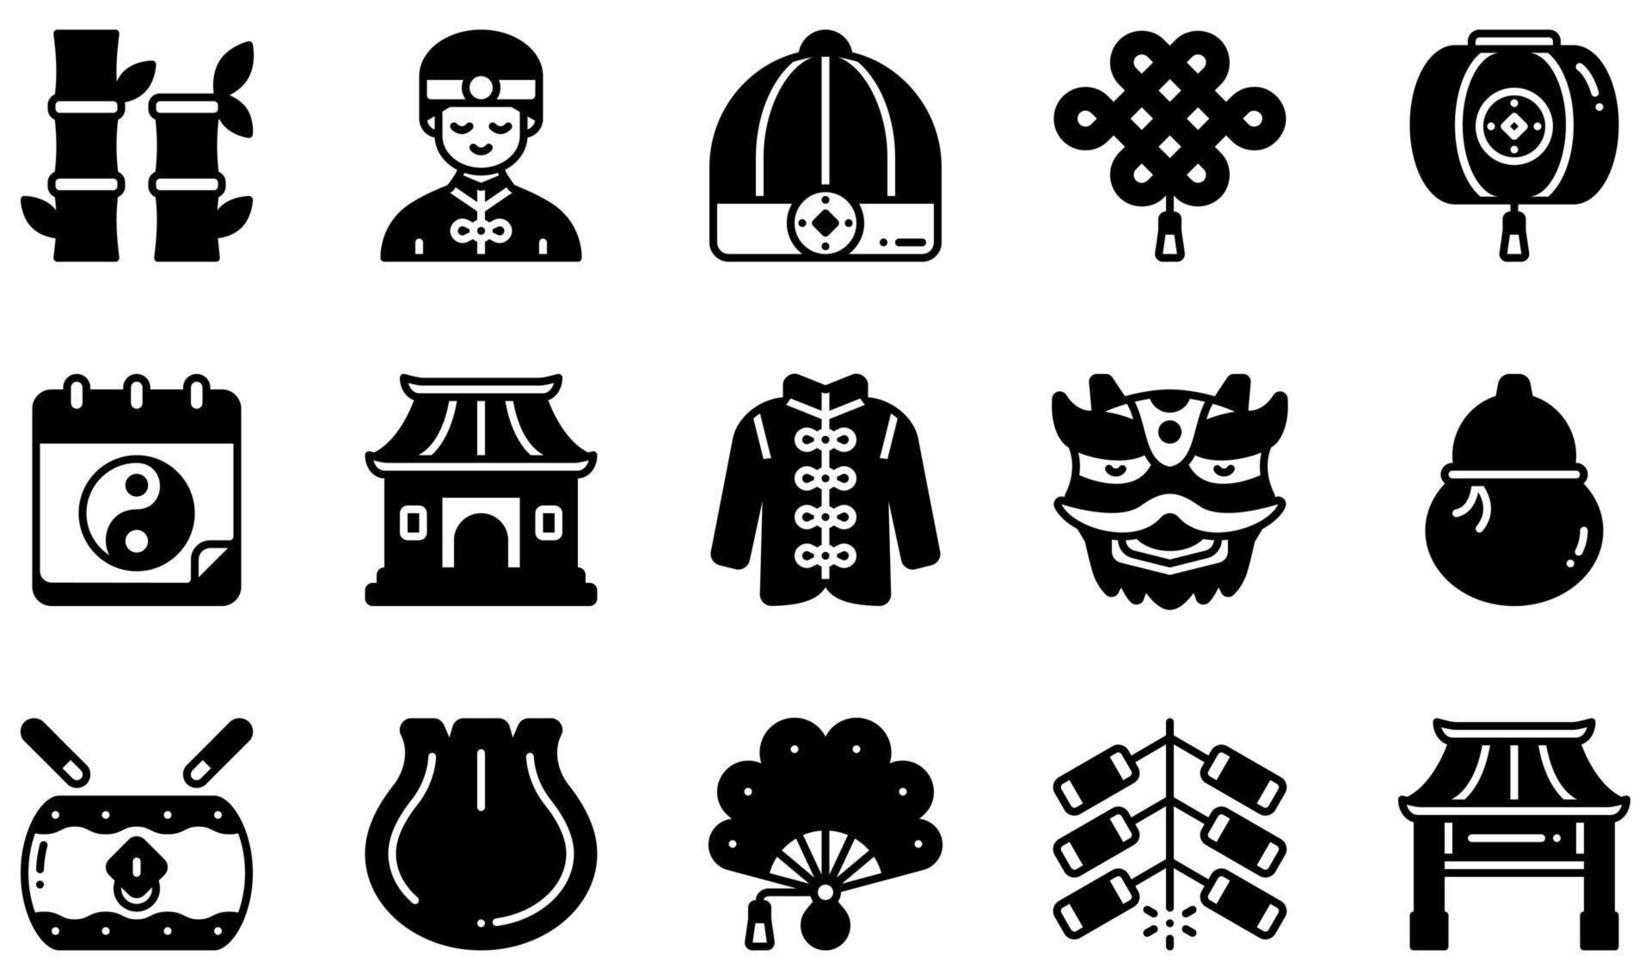 conjunto de ícones vetoriais relacionados ao ano novo chinês. contém ícones como bambu, chapéu chinês, lanterna chinesa, ano novo chinês, bolinho de massa, fogos de artifício e muito mais. vetor